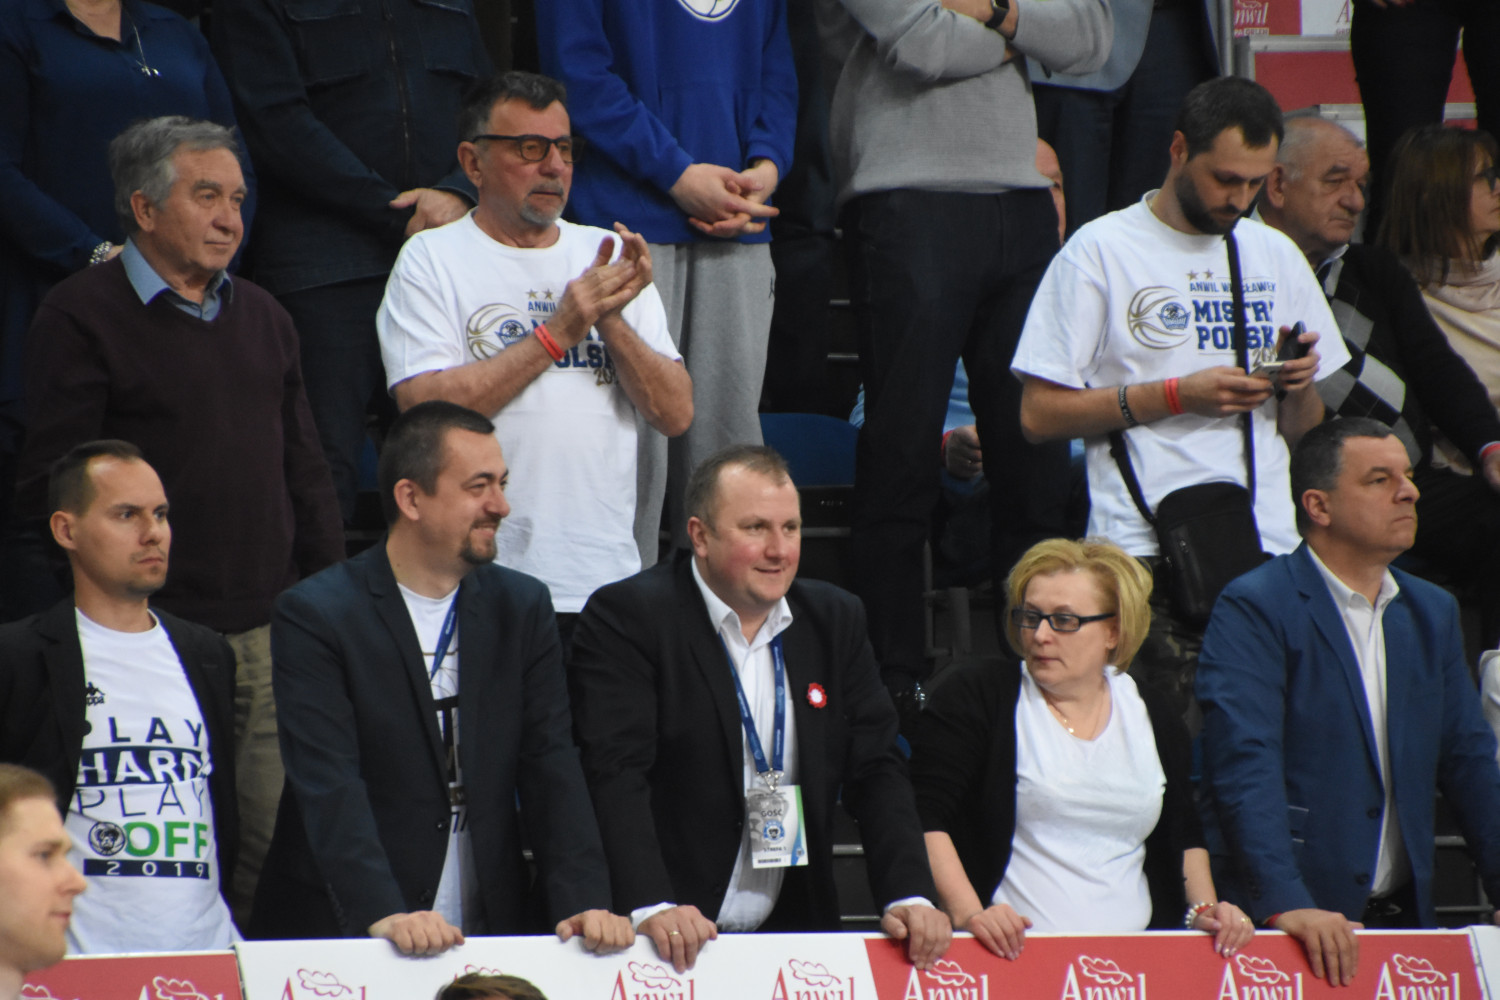 Anwilowi kibicują także Łukasz Pszczółkowski, Wydziału Sportu i Turystyki (pierwszy od lewej w pierwszym rzędzie) oraz Andrzej Walczak, prezes MPEC (trzeci od lewej, w pierwszym rzędzie). W drugim rzędzie od lewej: kandydat na prezydenta Włocławka w 2018 roku - Eugeniusz Wypijewski.